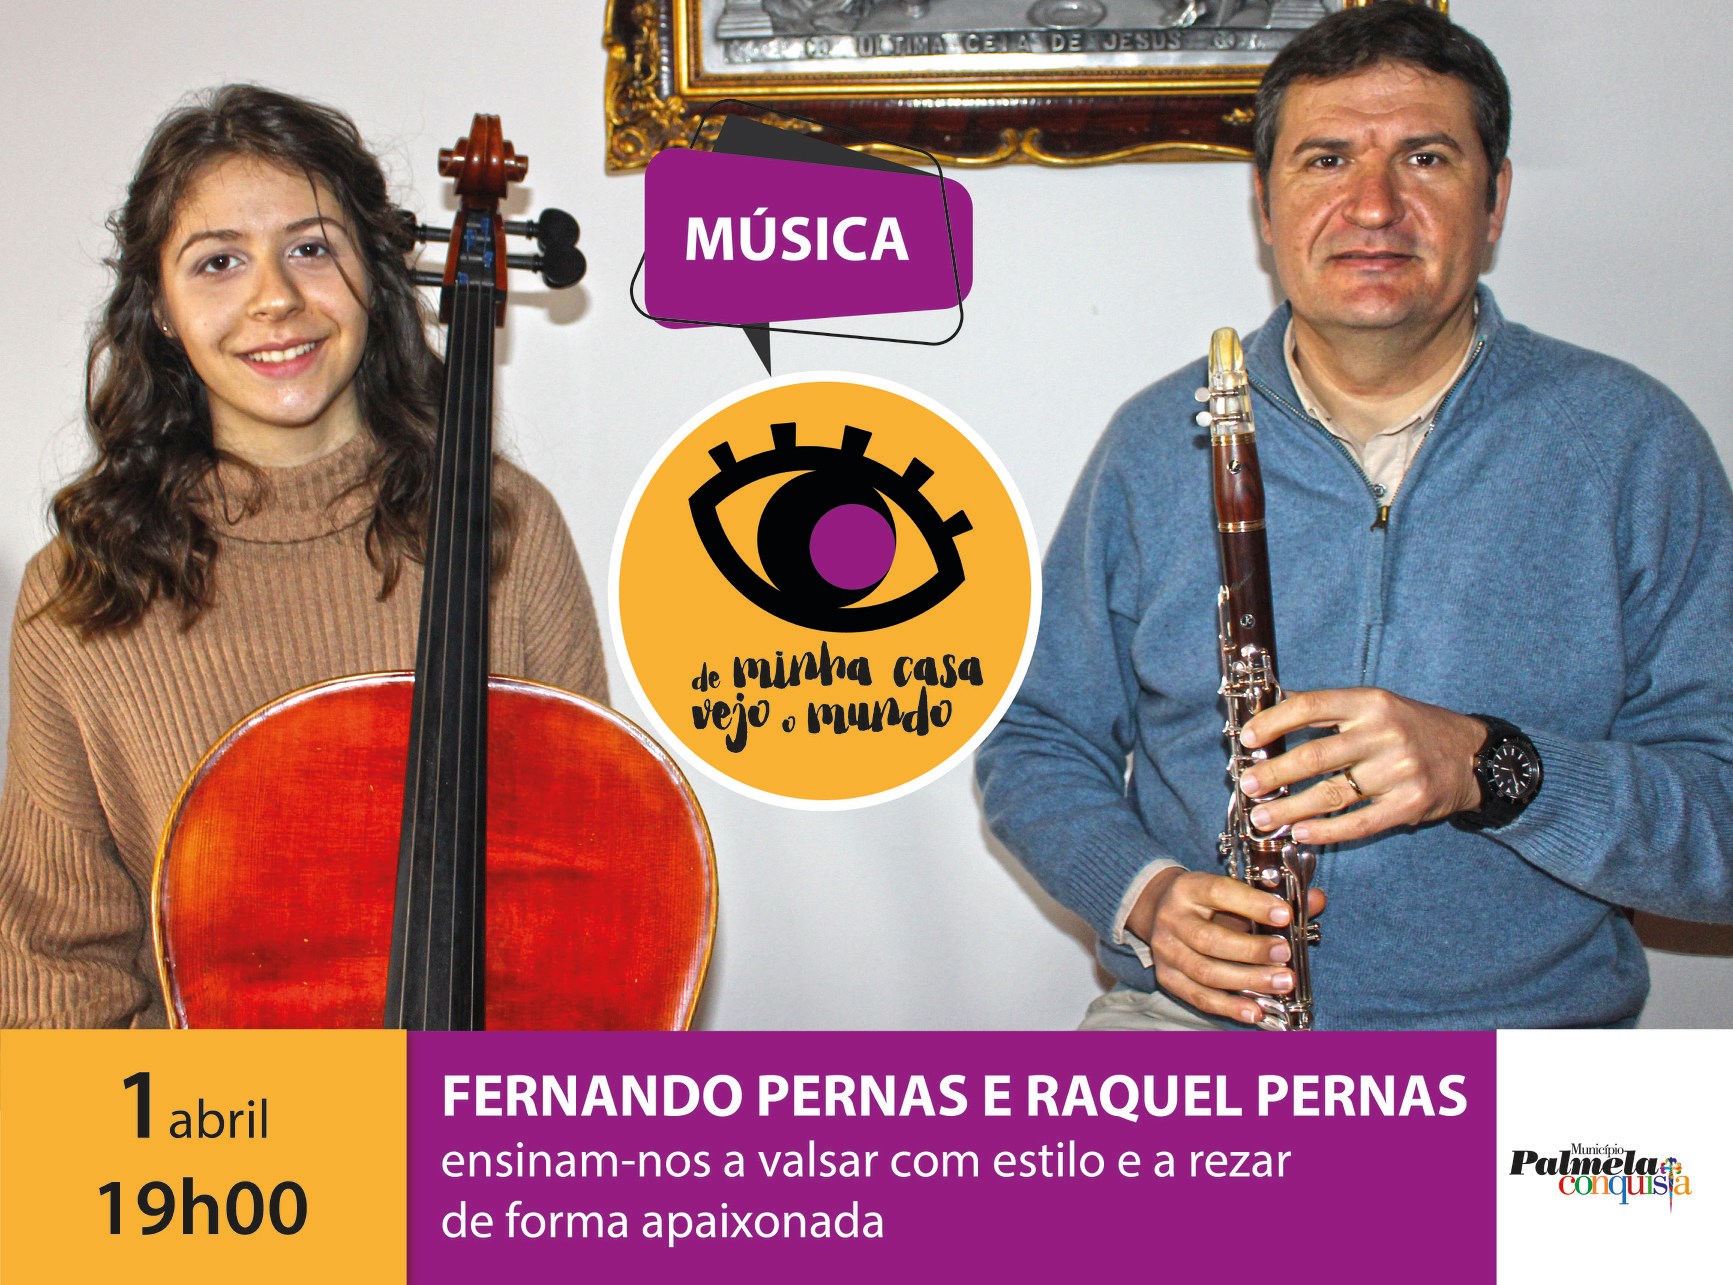 “De minha casa vejo o mundo”: Fernando e Raquel Pernas em momento musical familiar